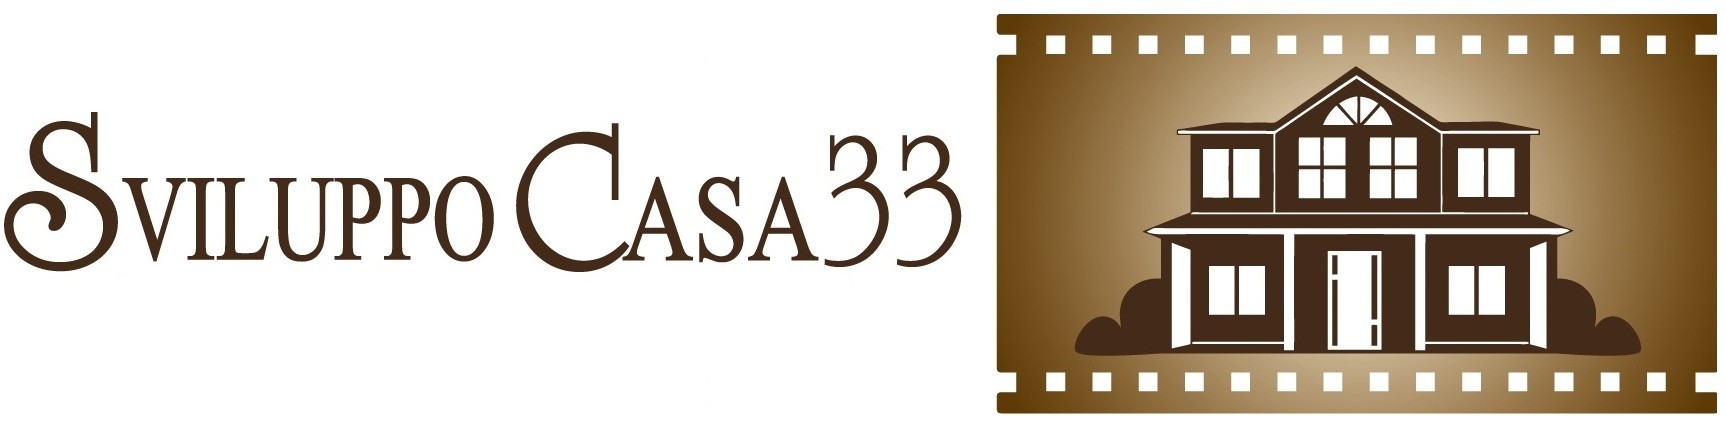 Sviluppo Casa33